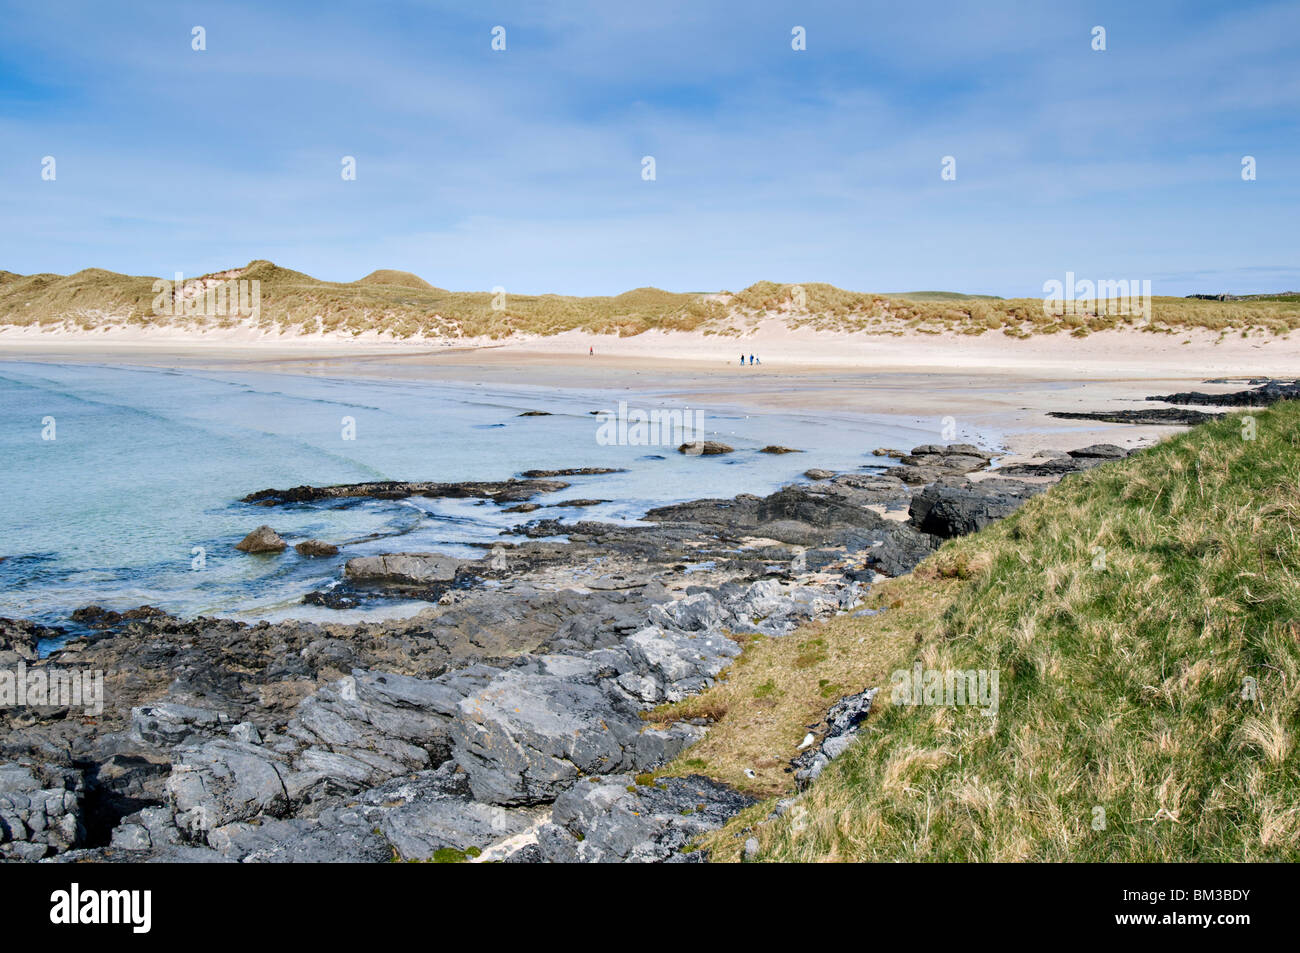 Hermosas playas de arena y la bahía de Balnakeil Bay, Durness, Sutherland en Escocia Foto de stock